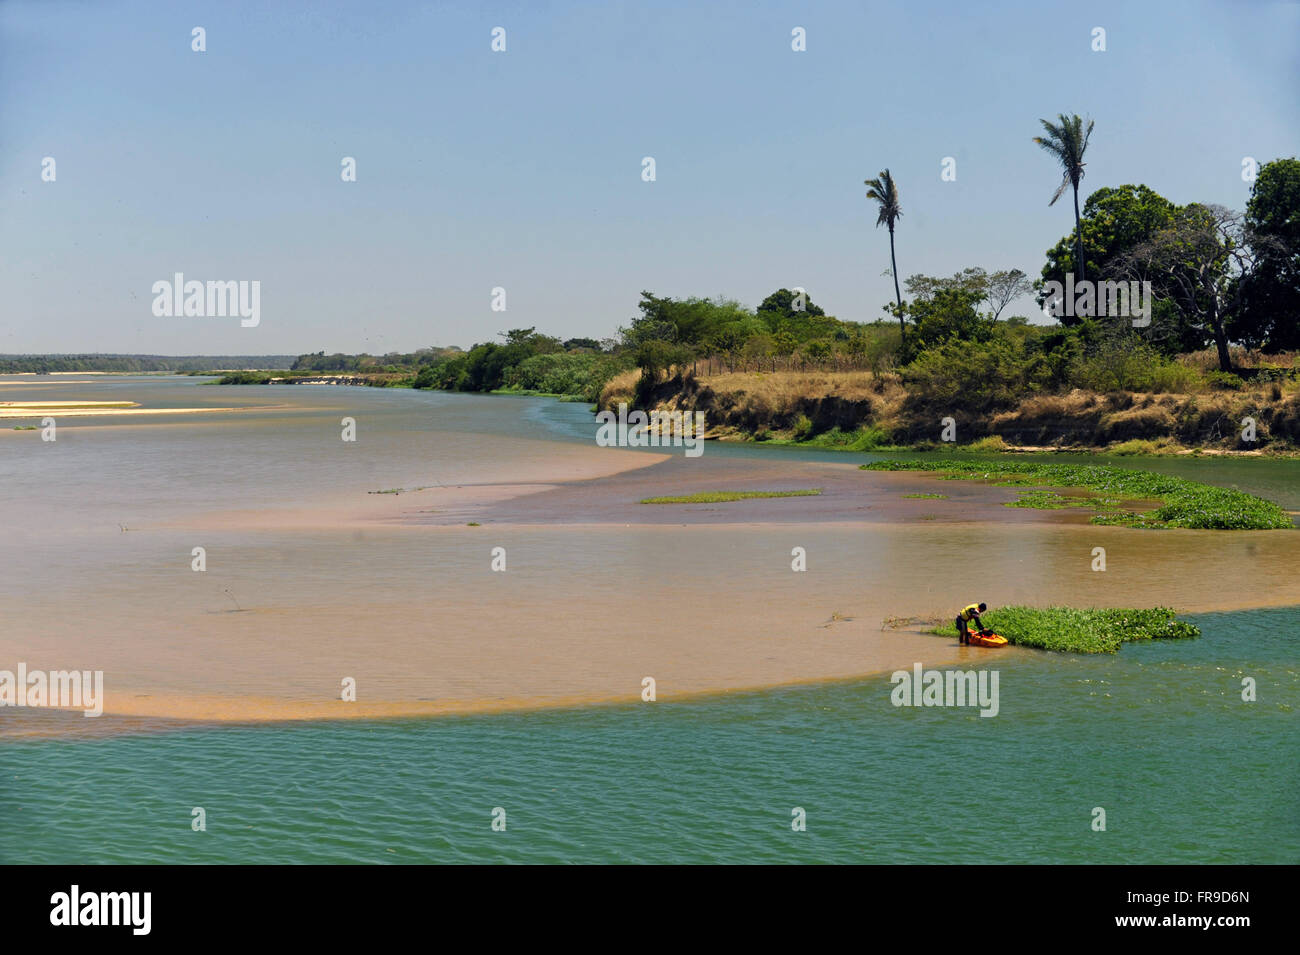 Encontro dos rios - local onde o Rio Poti embaixo e Paraníba no fundo se encontram Stock Photo